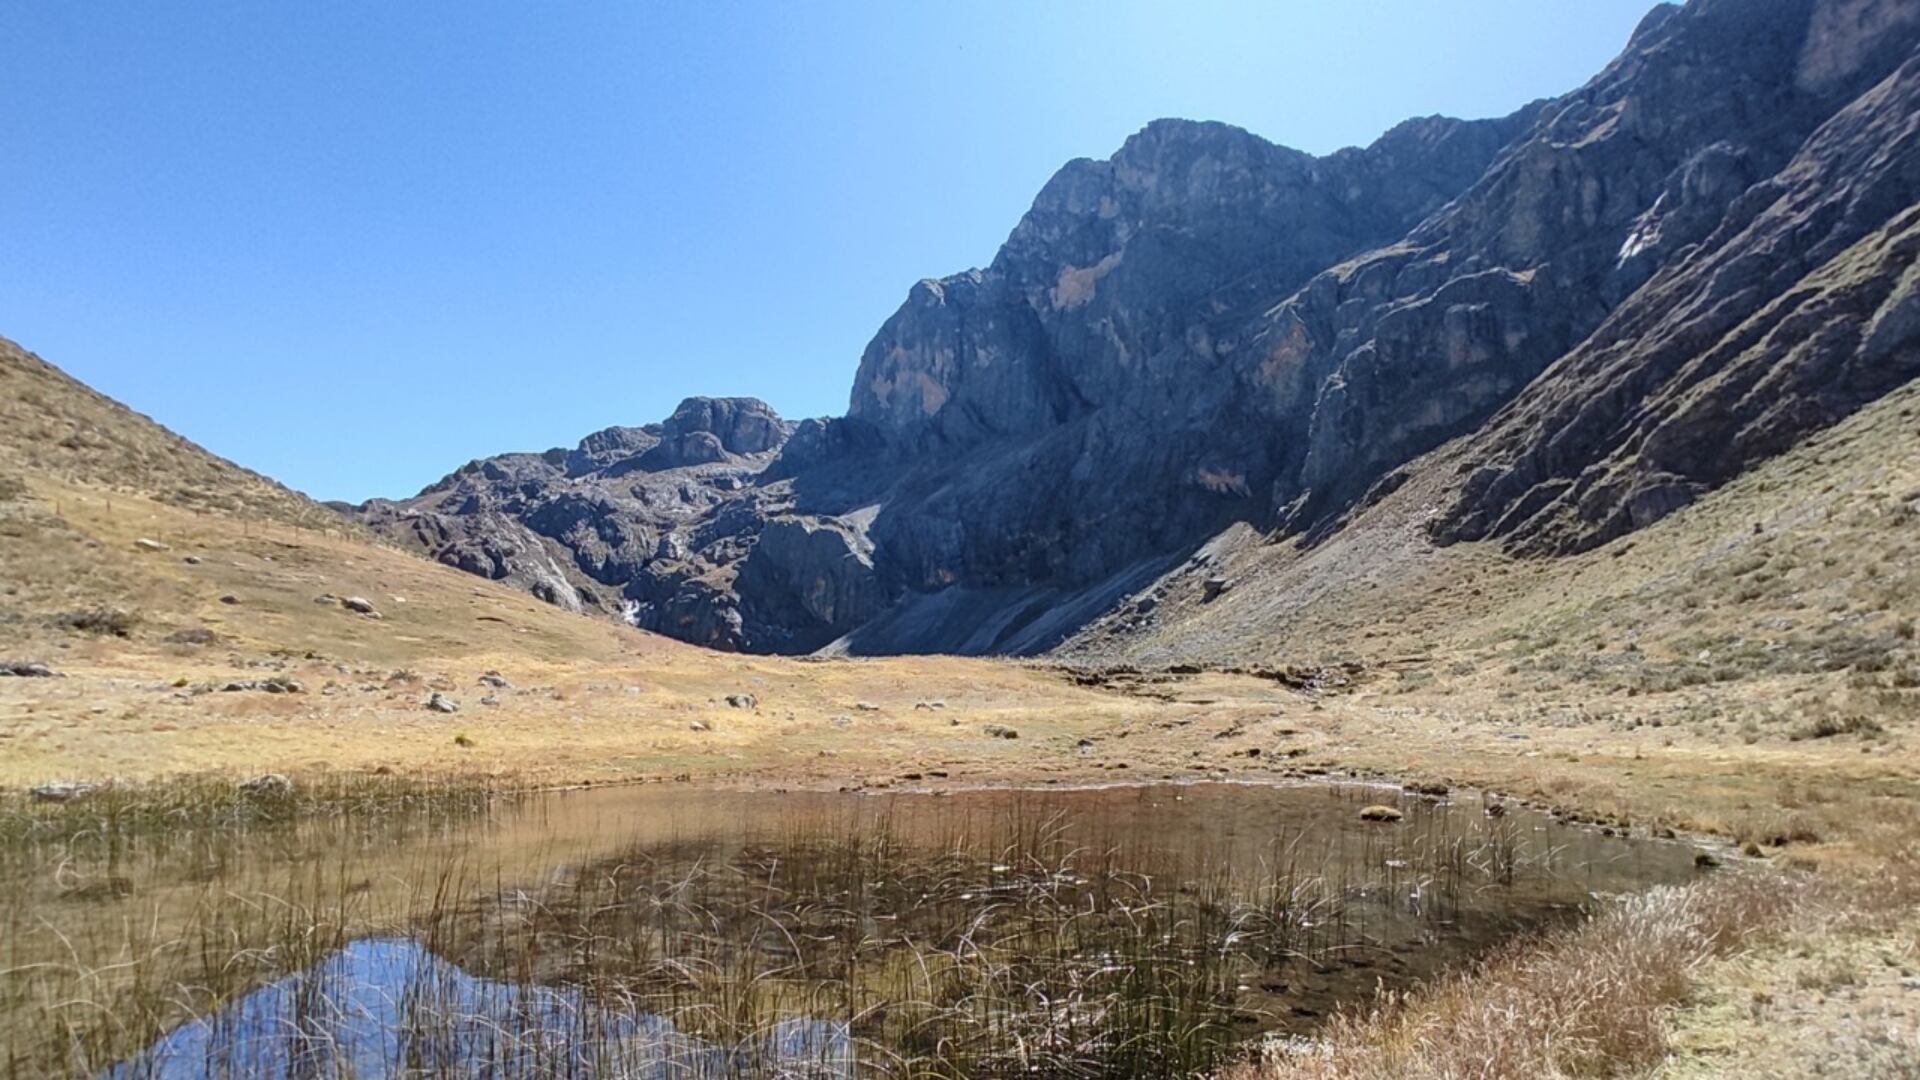 Vista de uno de los paisajes más imponentes de la sierra peruana.